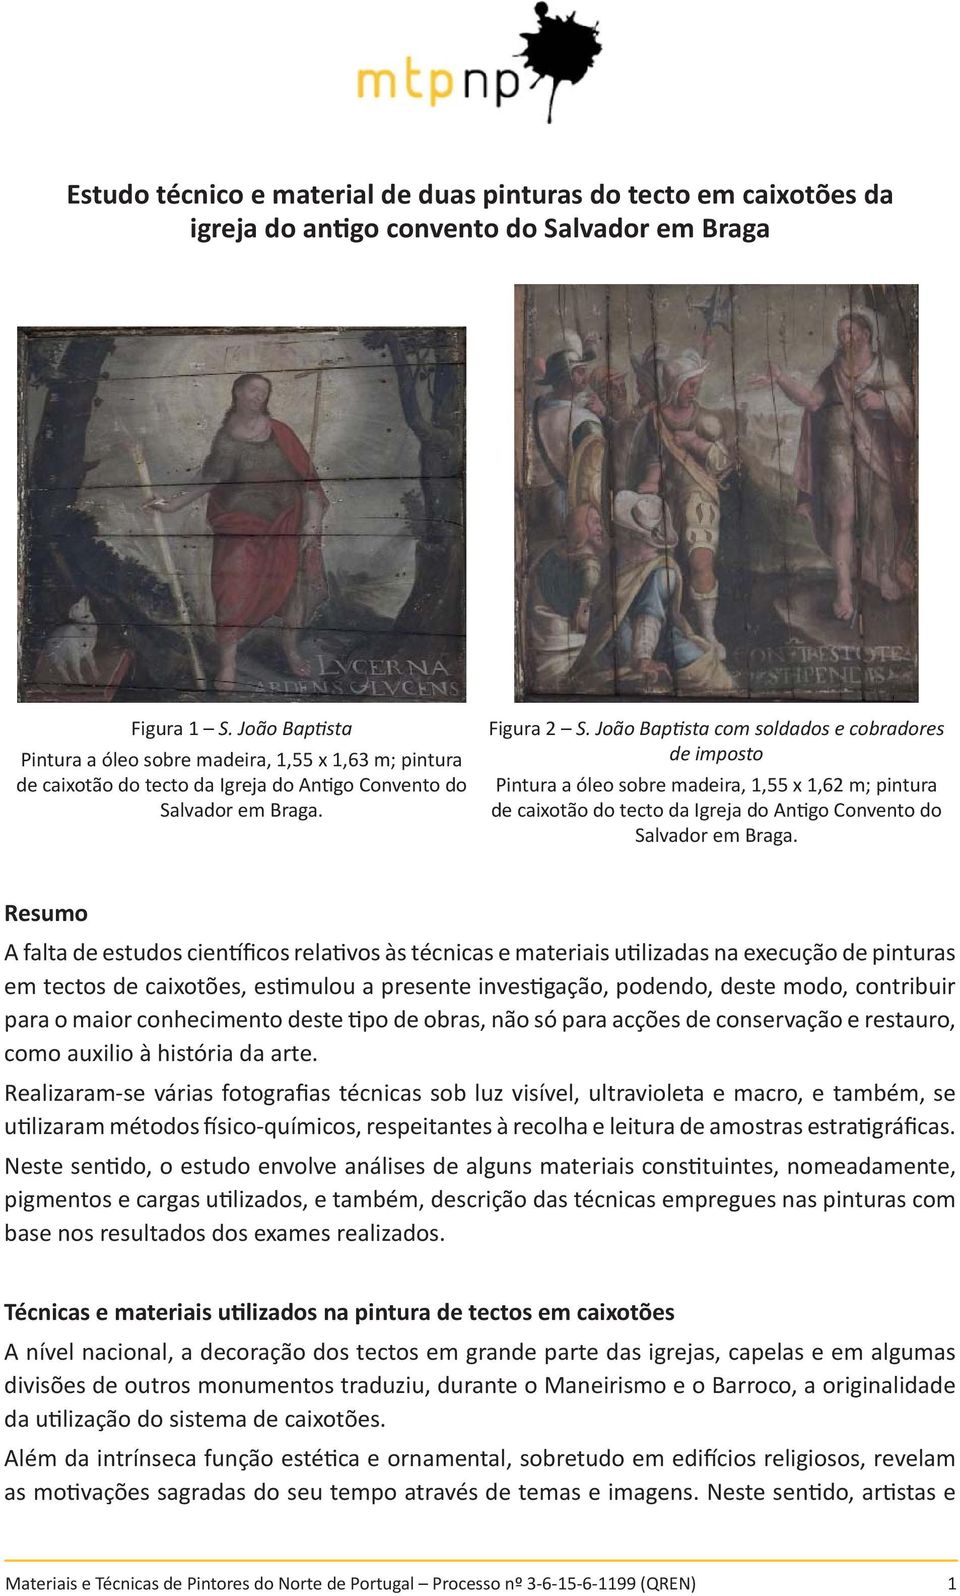 João Baptista com soldados e cobradores de imposto Pintura a óleo sobre madeira, 1,55 x 1,62 m; pintura de caixotão do tecto da Igreja do Antigo Convento do Salvador em Braga.